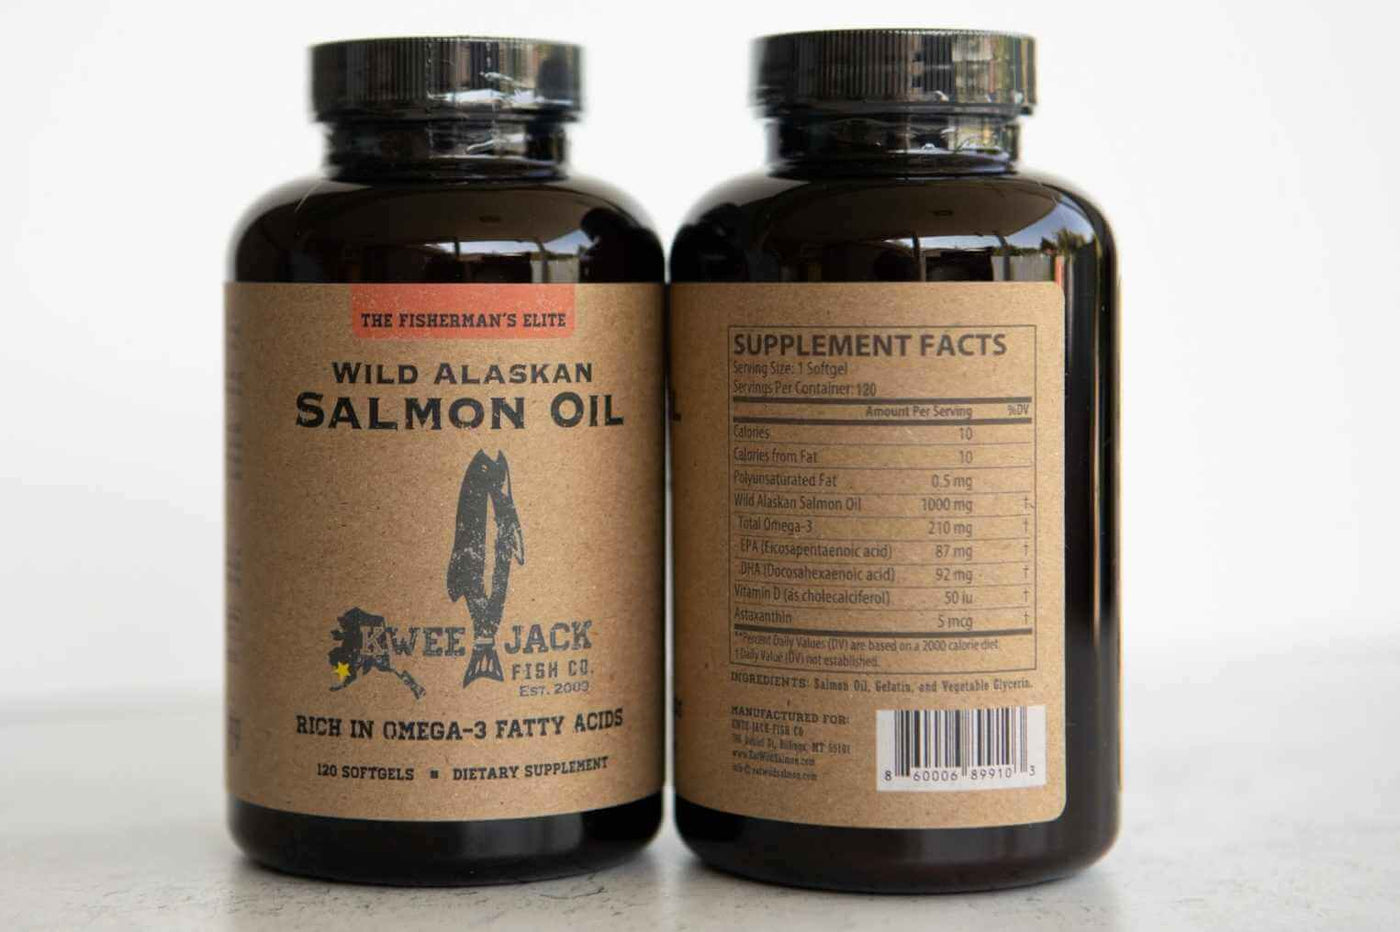 Wild Alaskan Salmon Oil Omega-3 Supplement (Glendive)